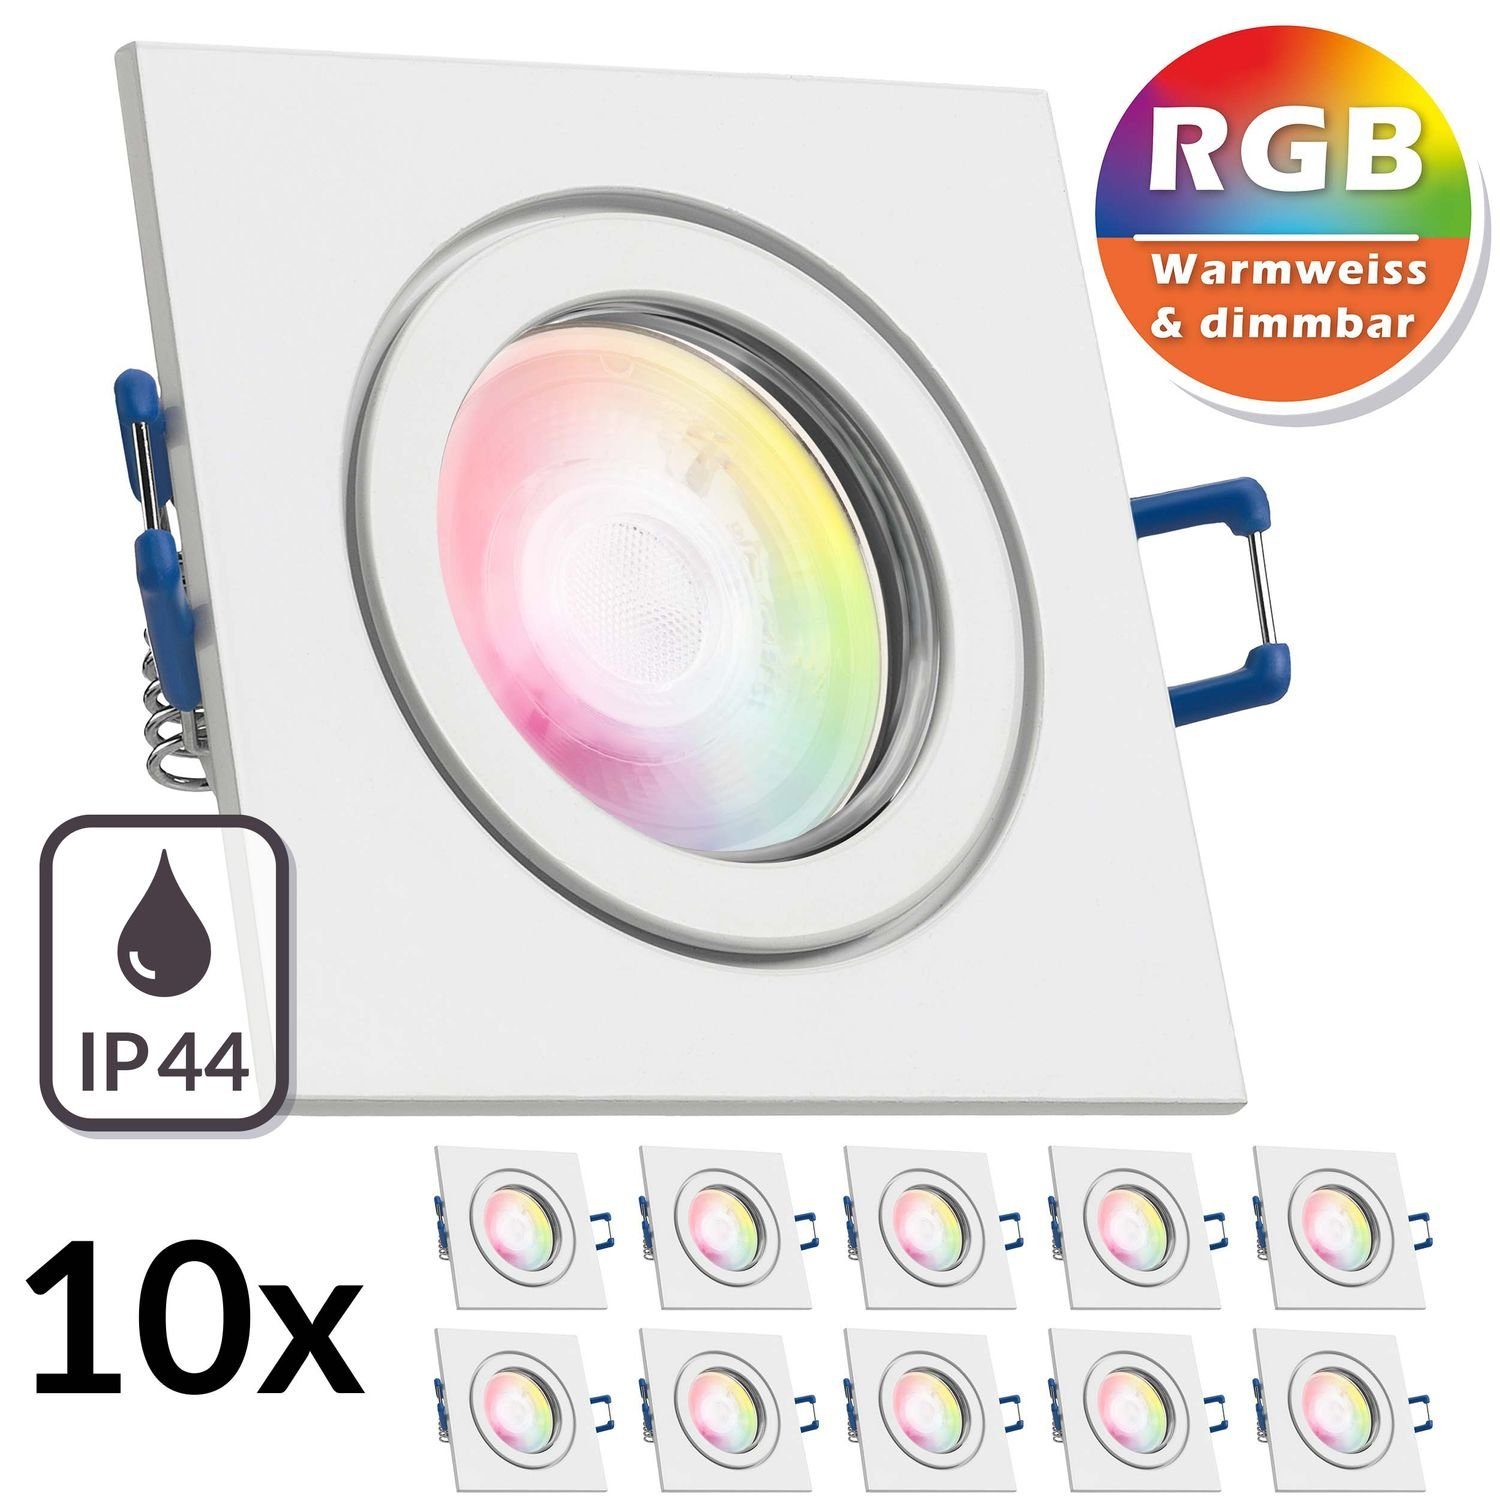 LEDANDO LED Einbaustrahler 10er IP44 RGB LED Einbaustrahler Set extra flach in weiß mit 3W LED vo